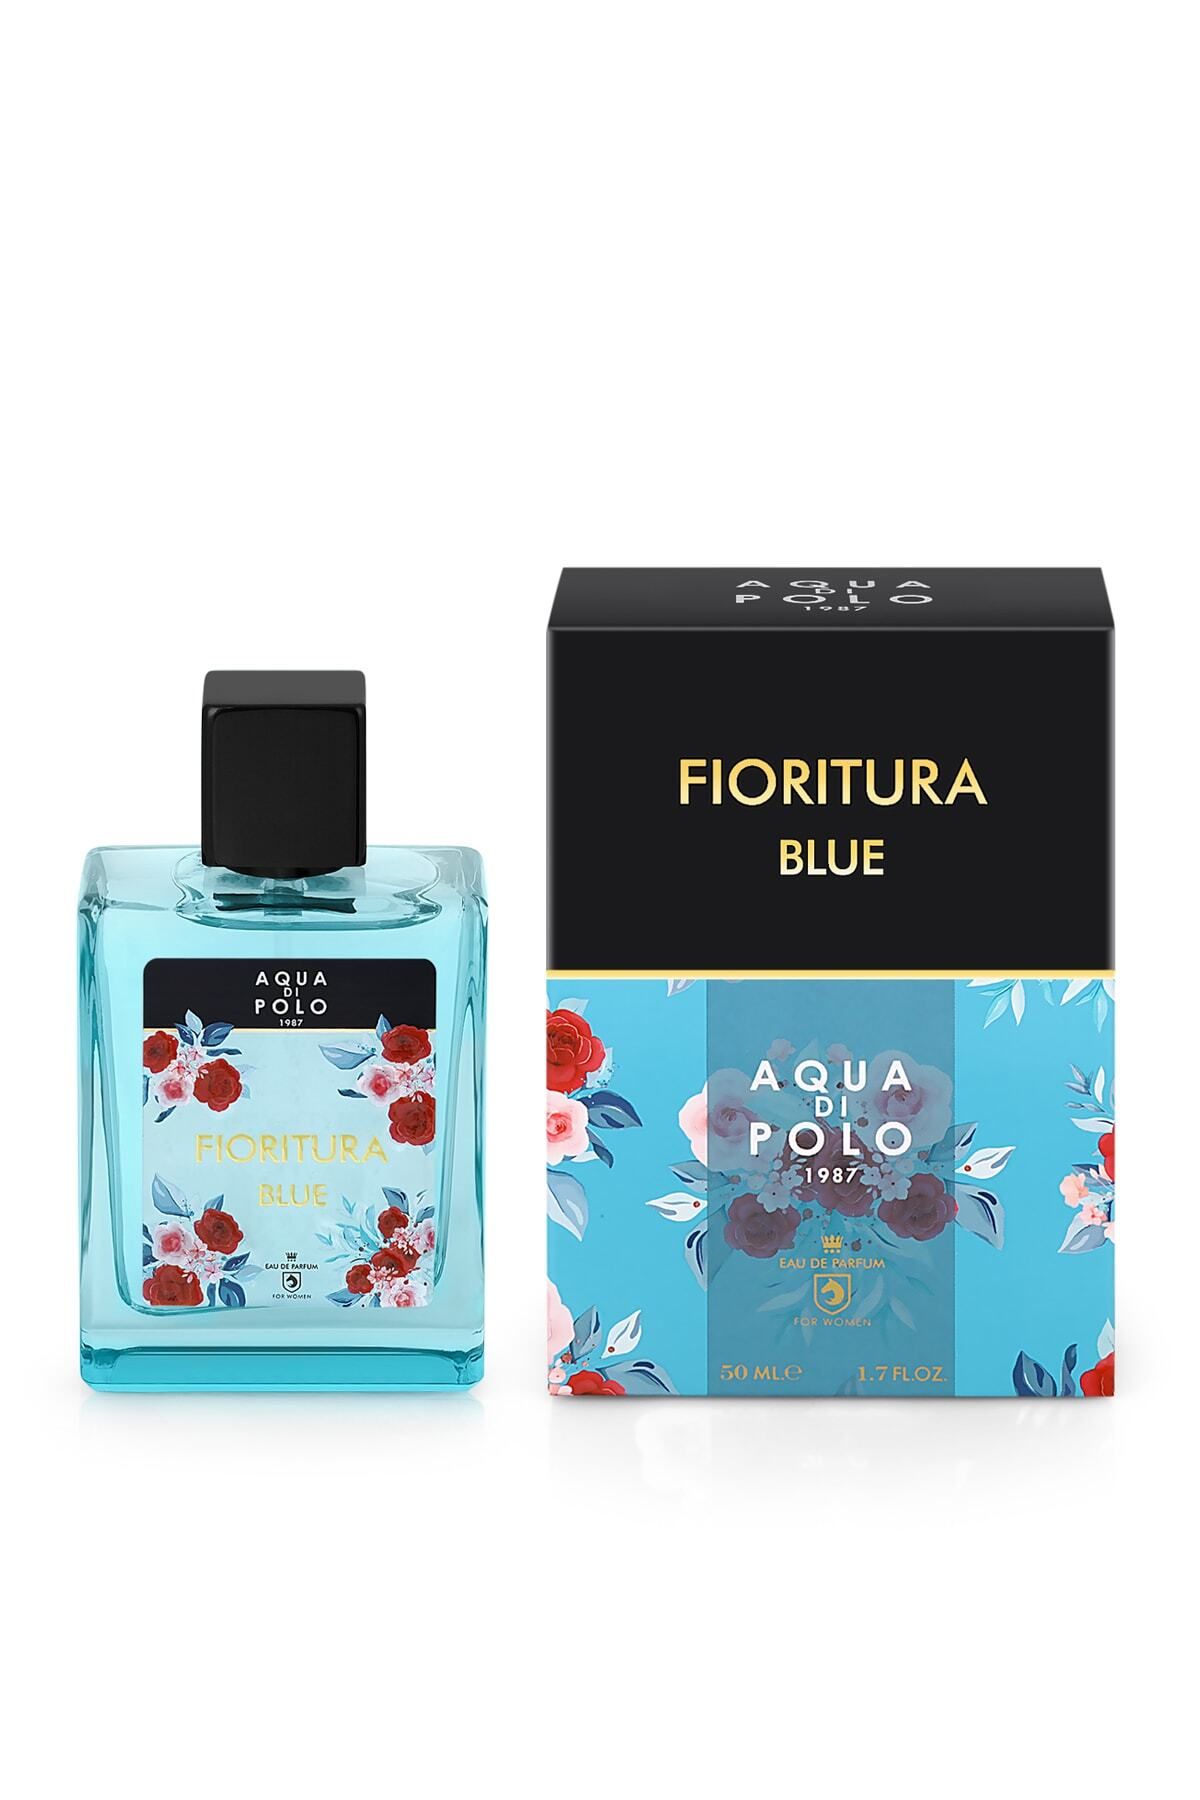 Aqua Di Polo 1987 Fioritura Blue Edp 50 ml Kadın Parfüm Apcn003001